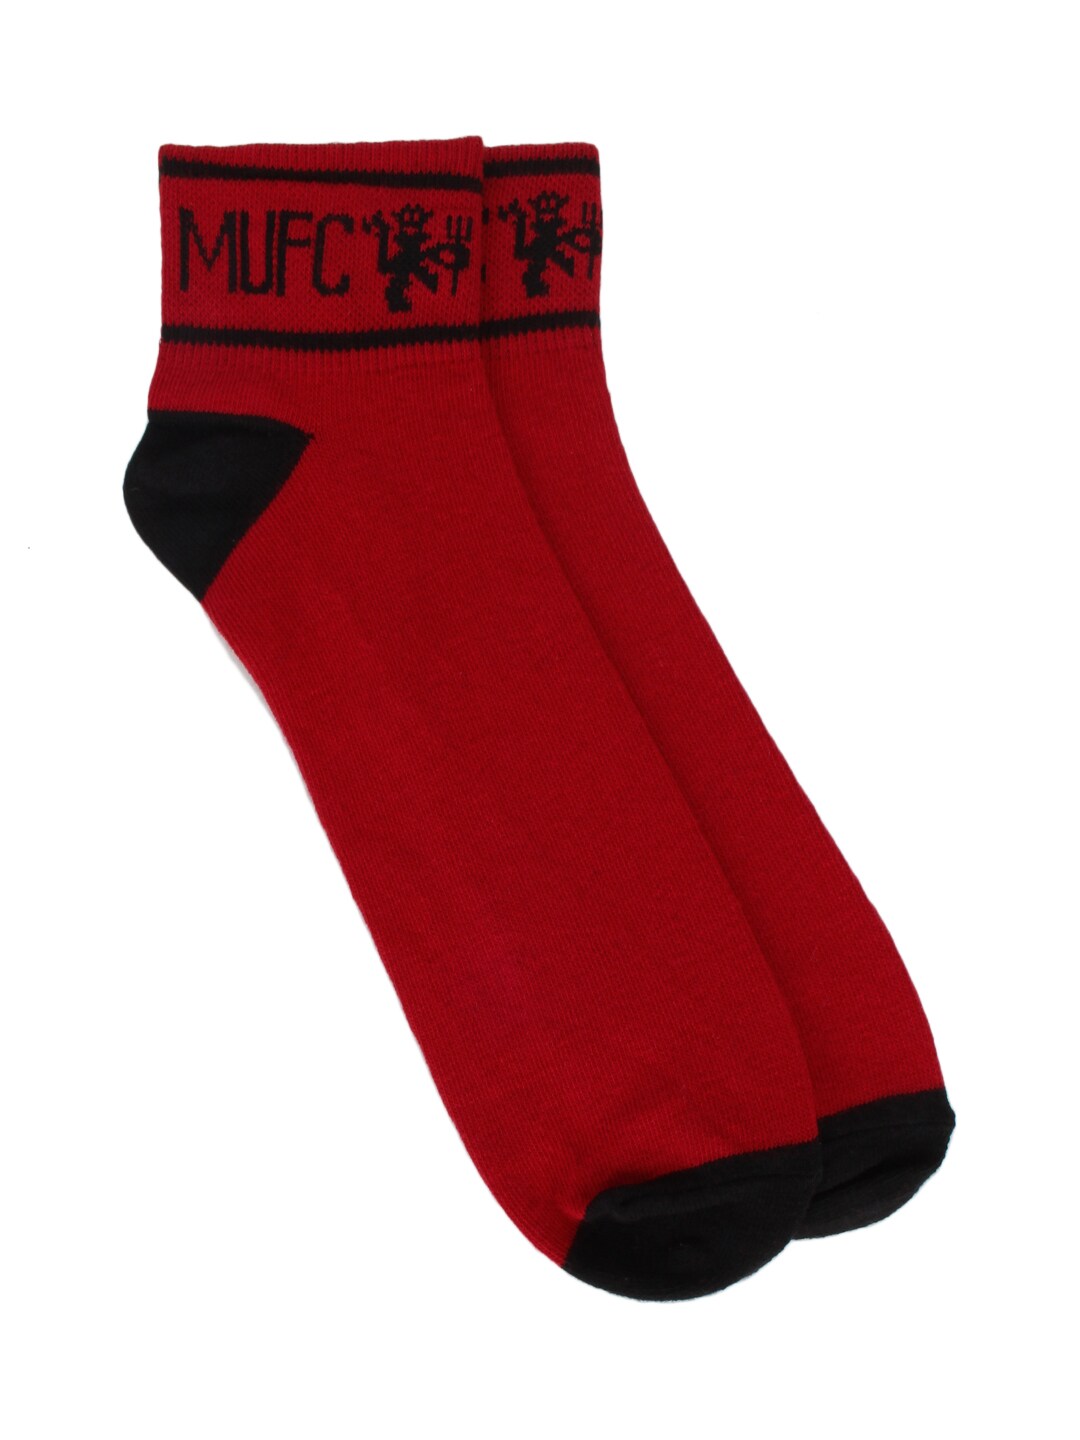 Manchester United Men Red Socks